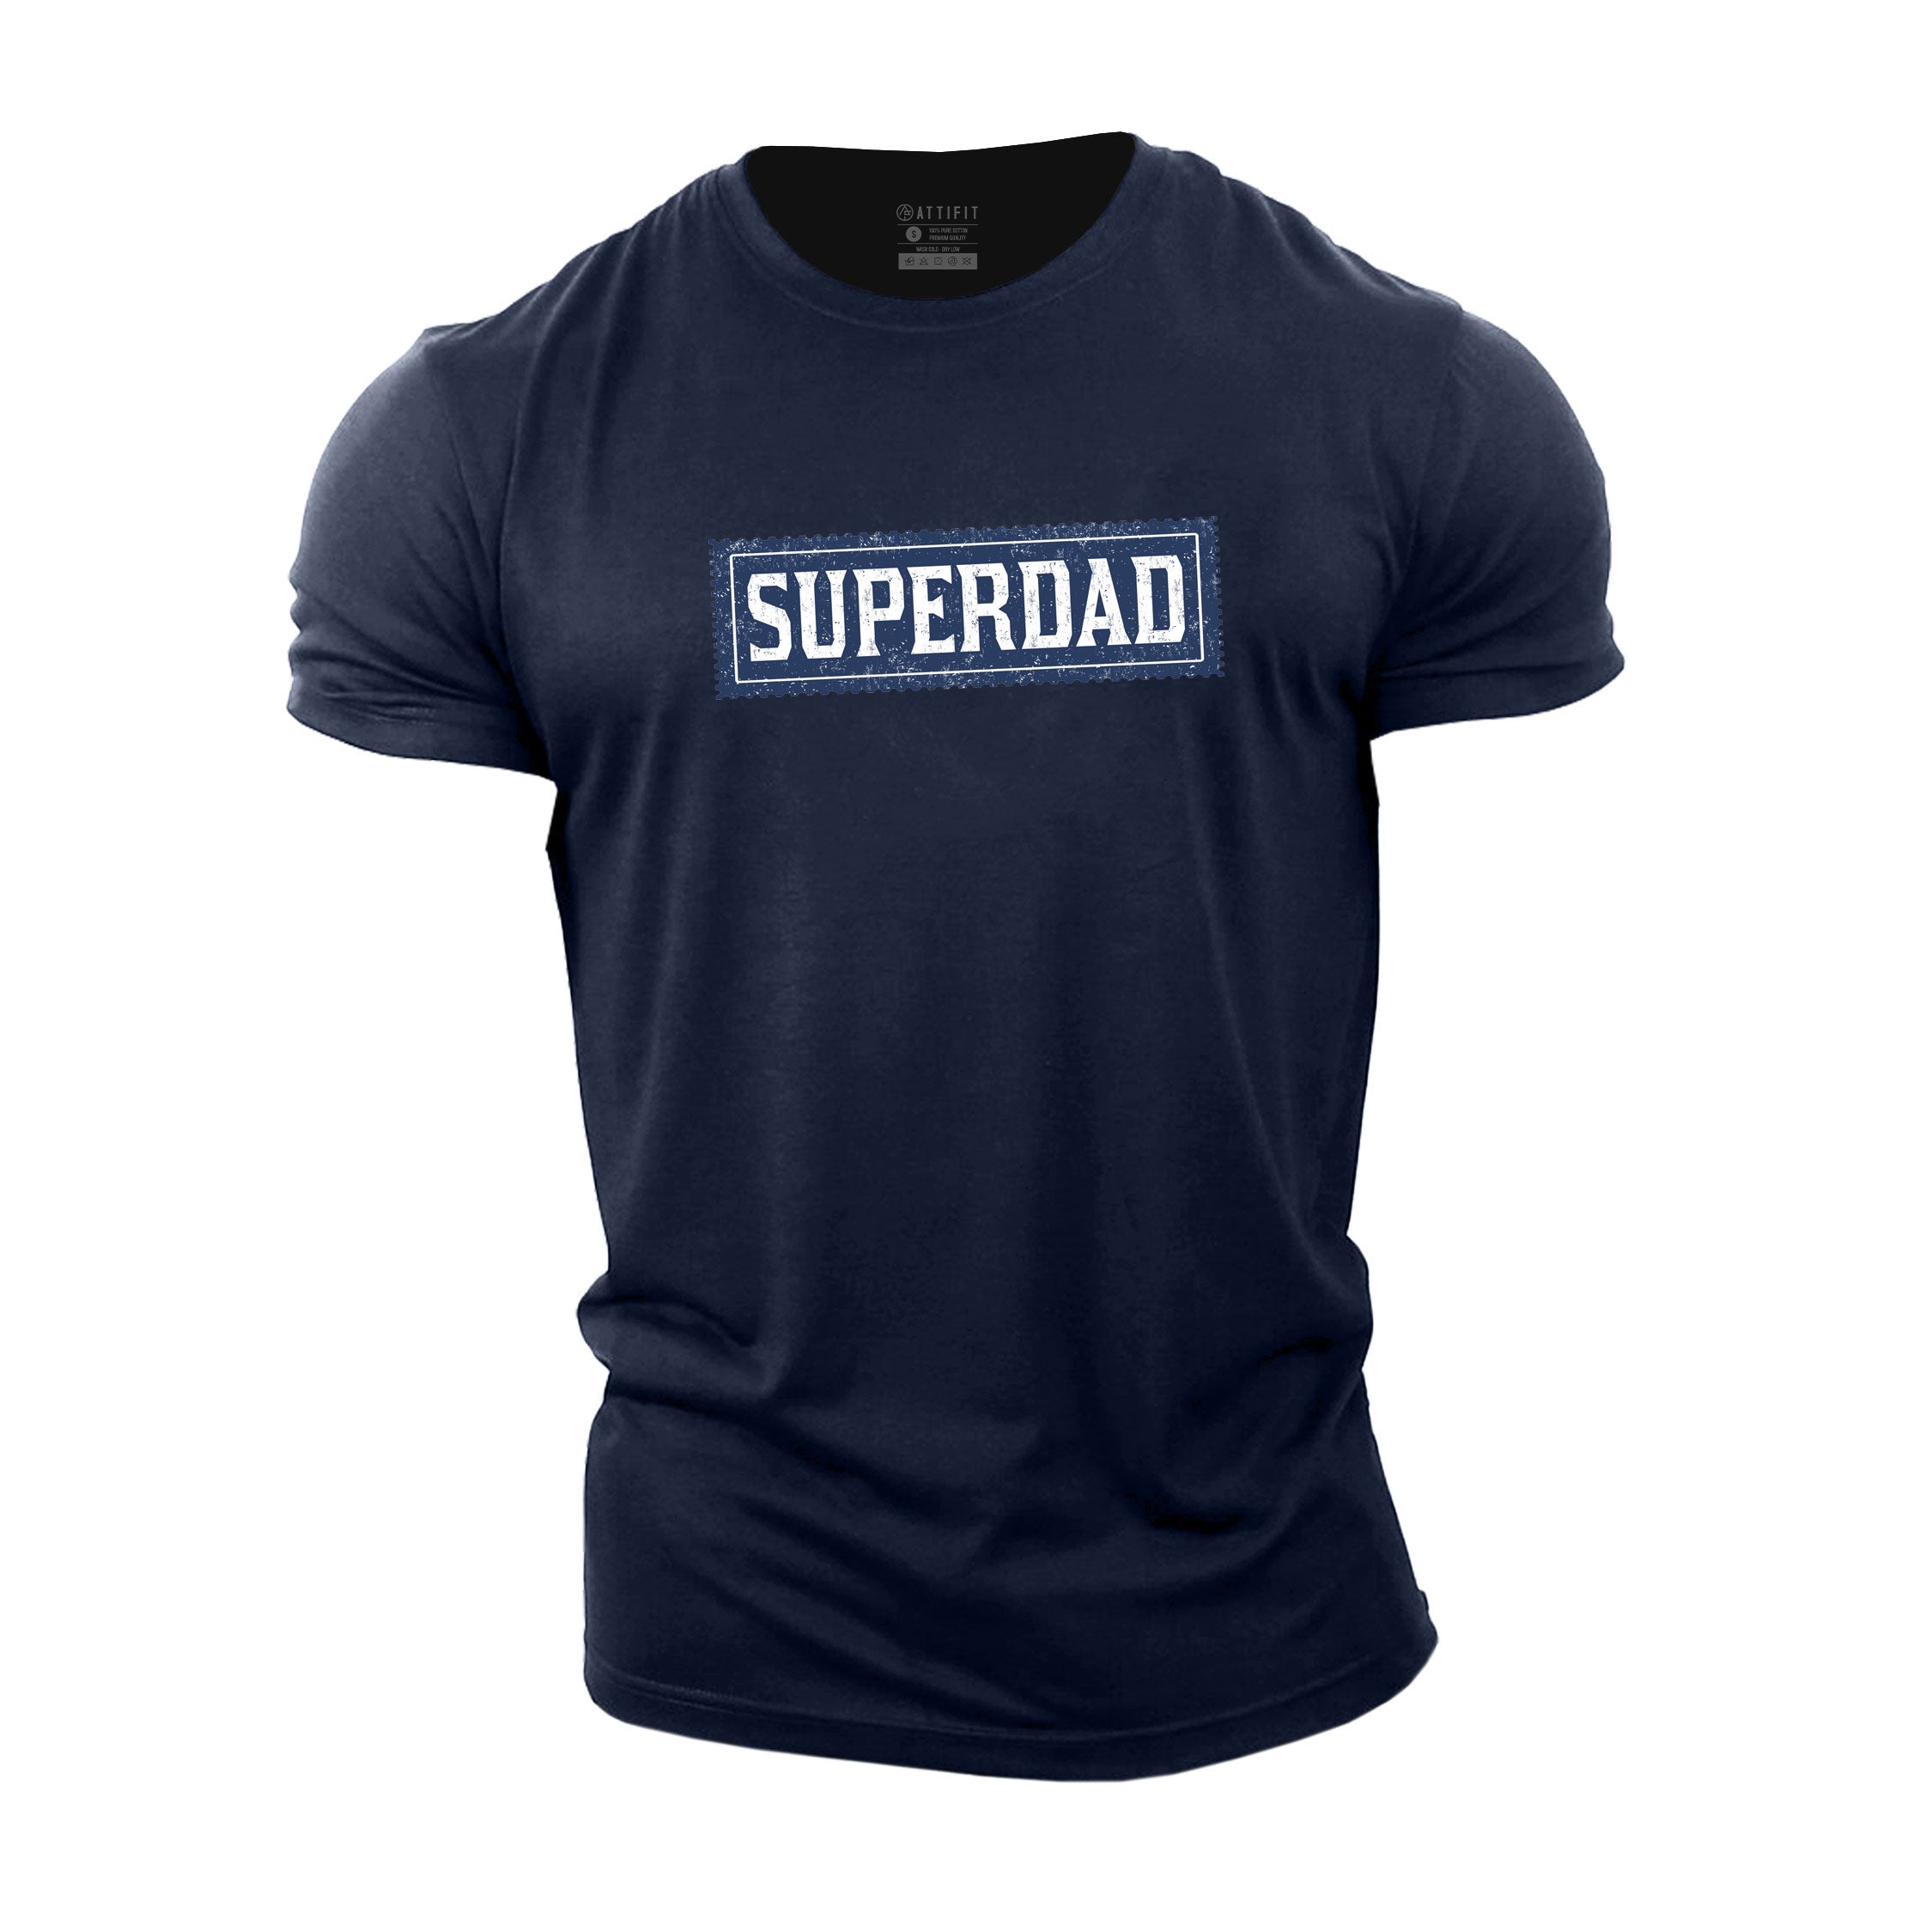 Cotton Superdad T-shirt